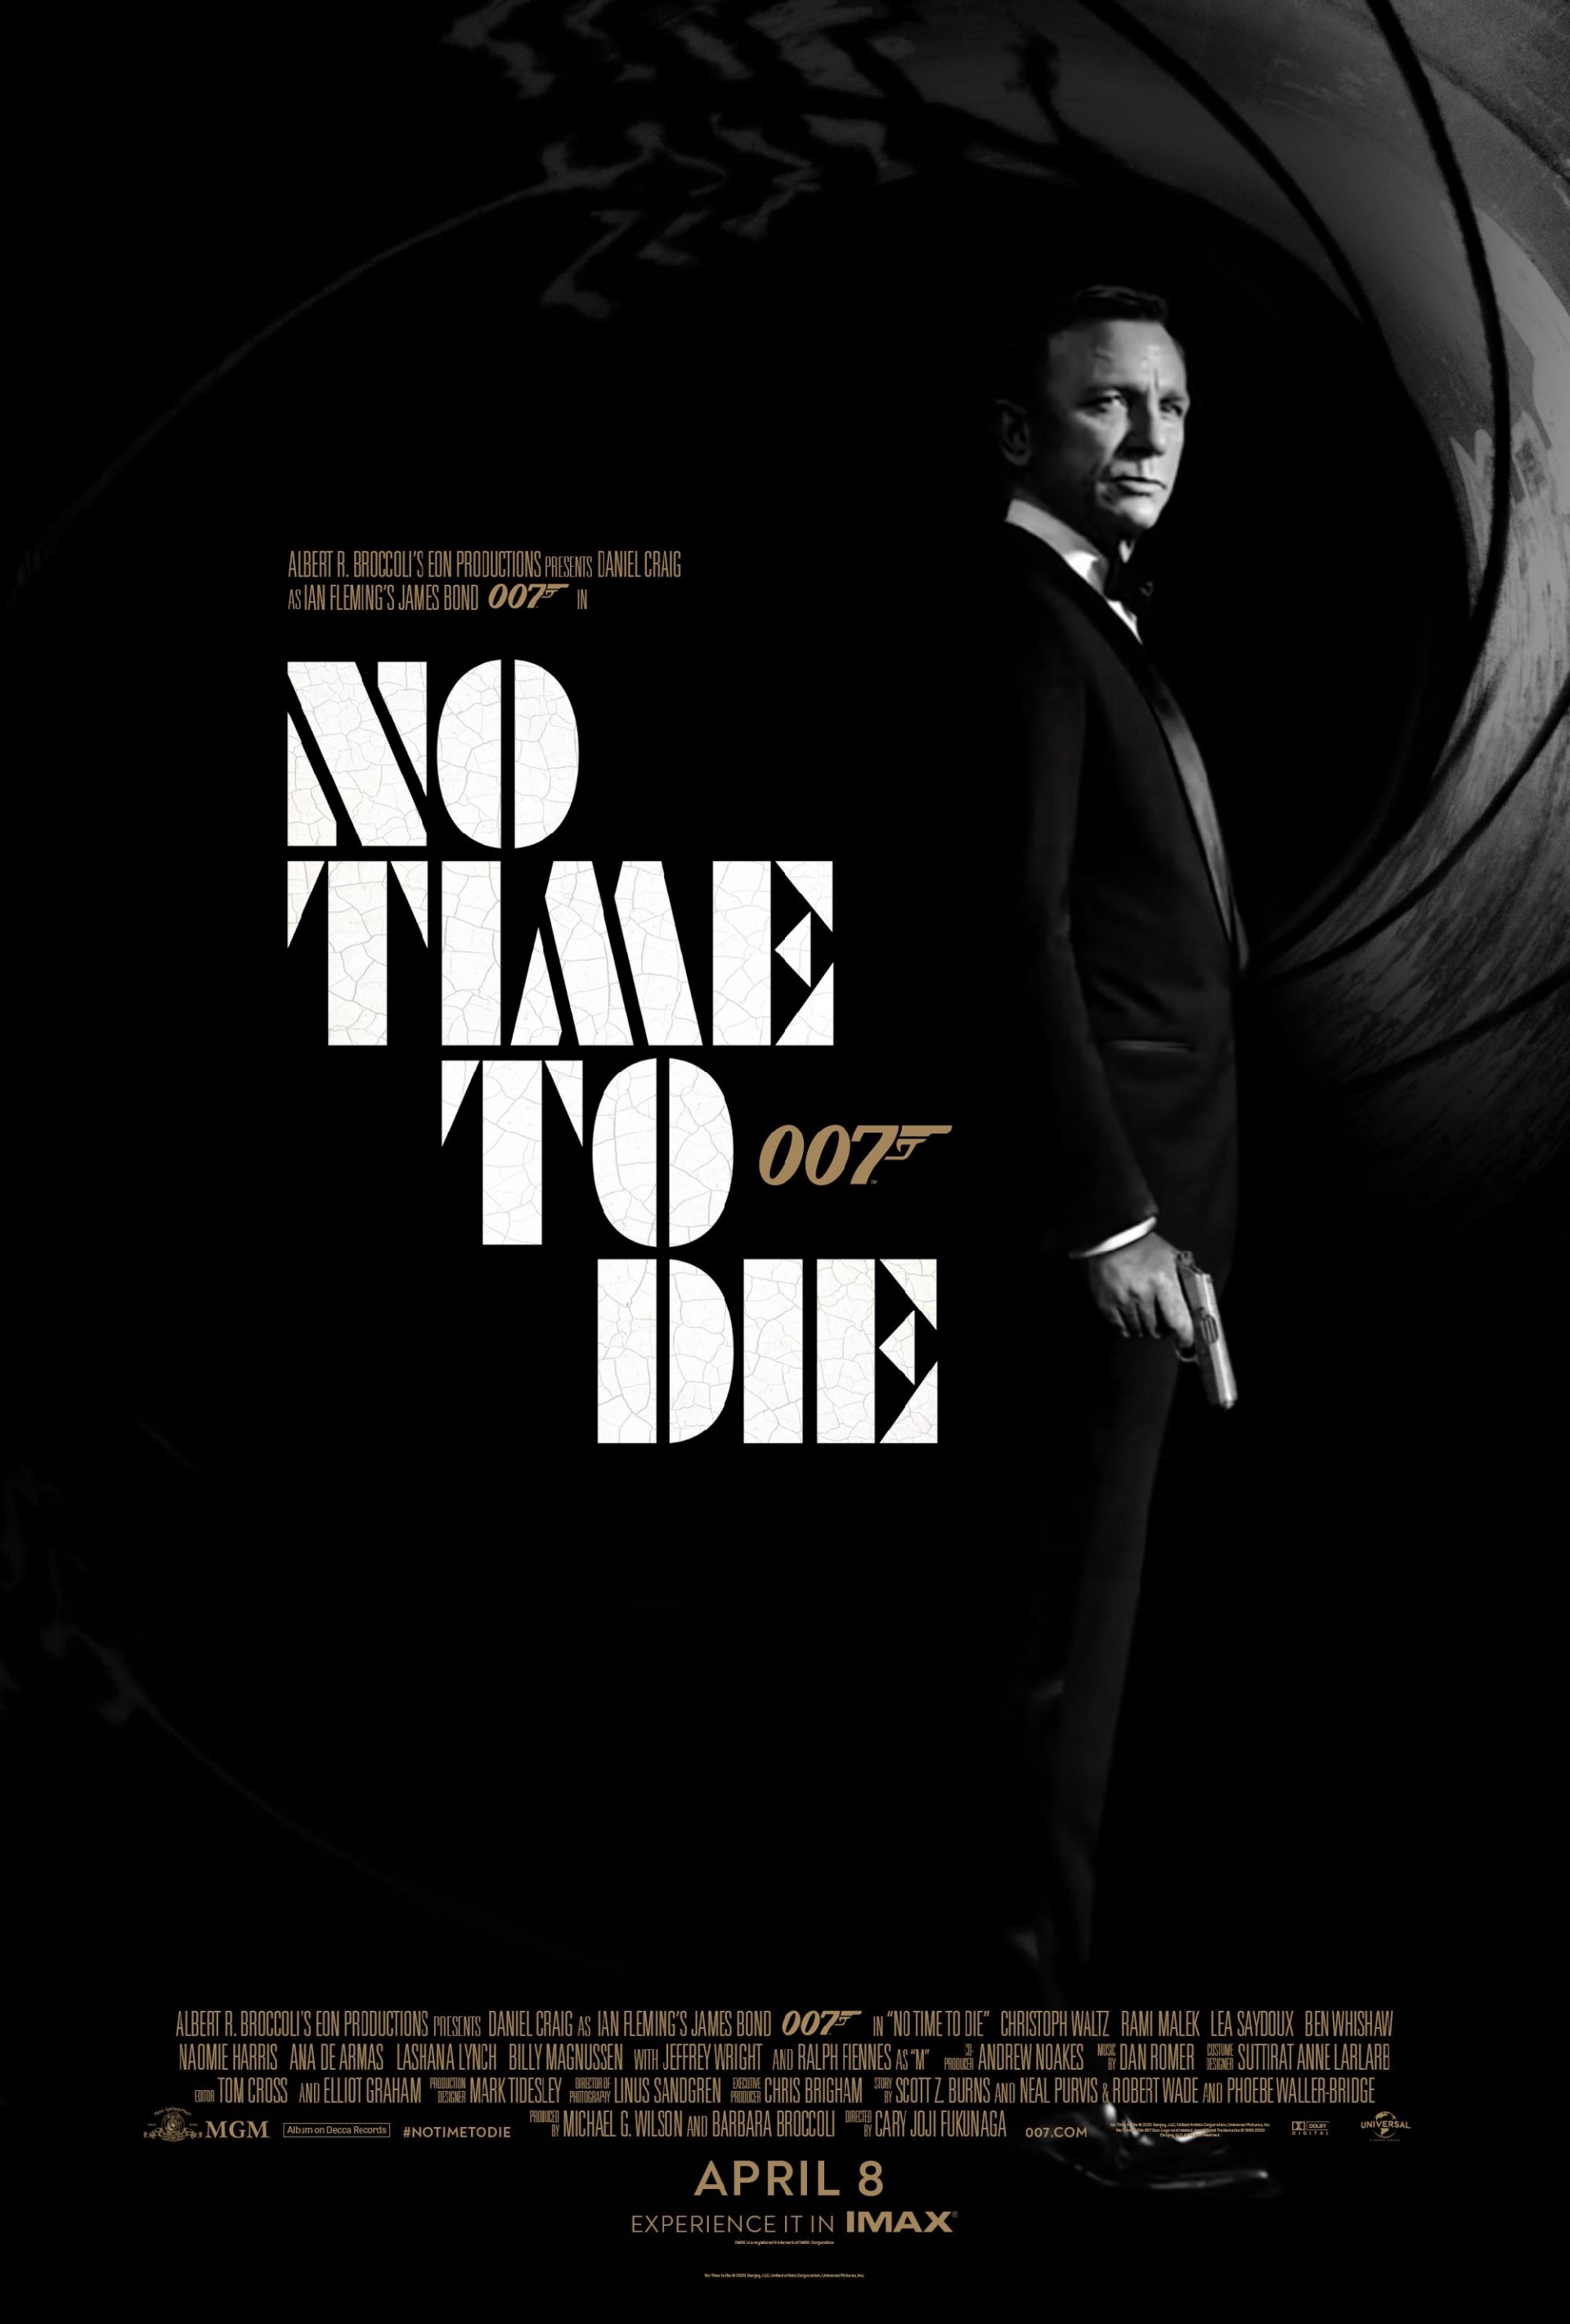 Bárki tervezhet posztert James Bondnak